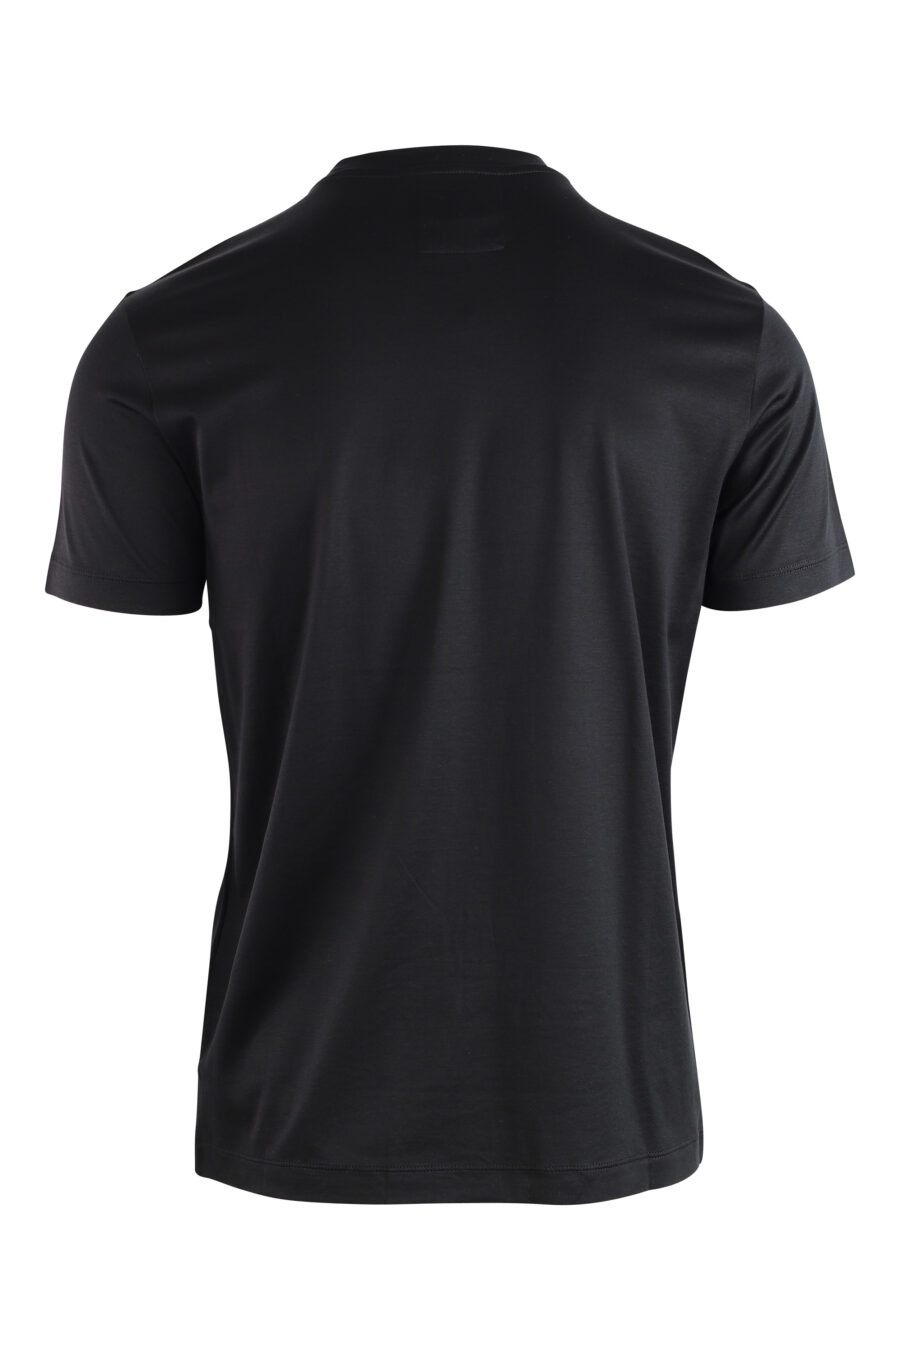 T-shirt schwarz mit kleinem weißen Logo - IMG 3742